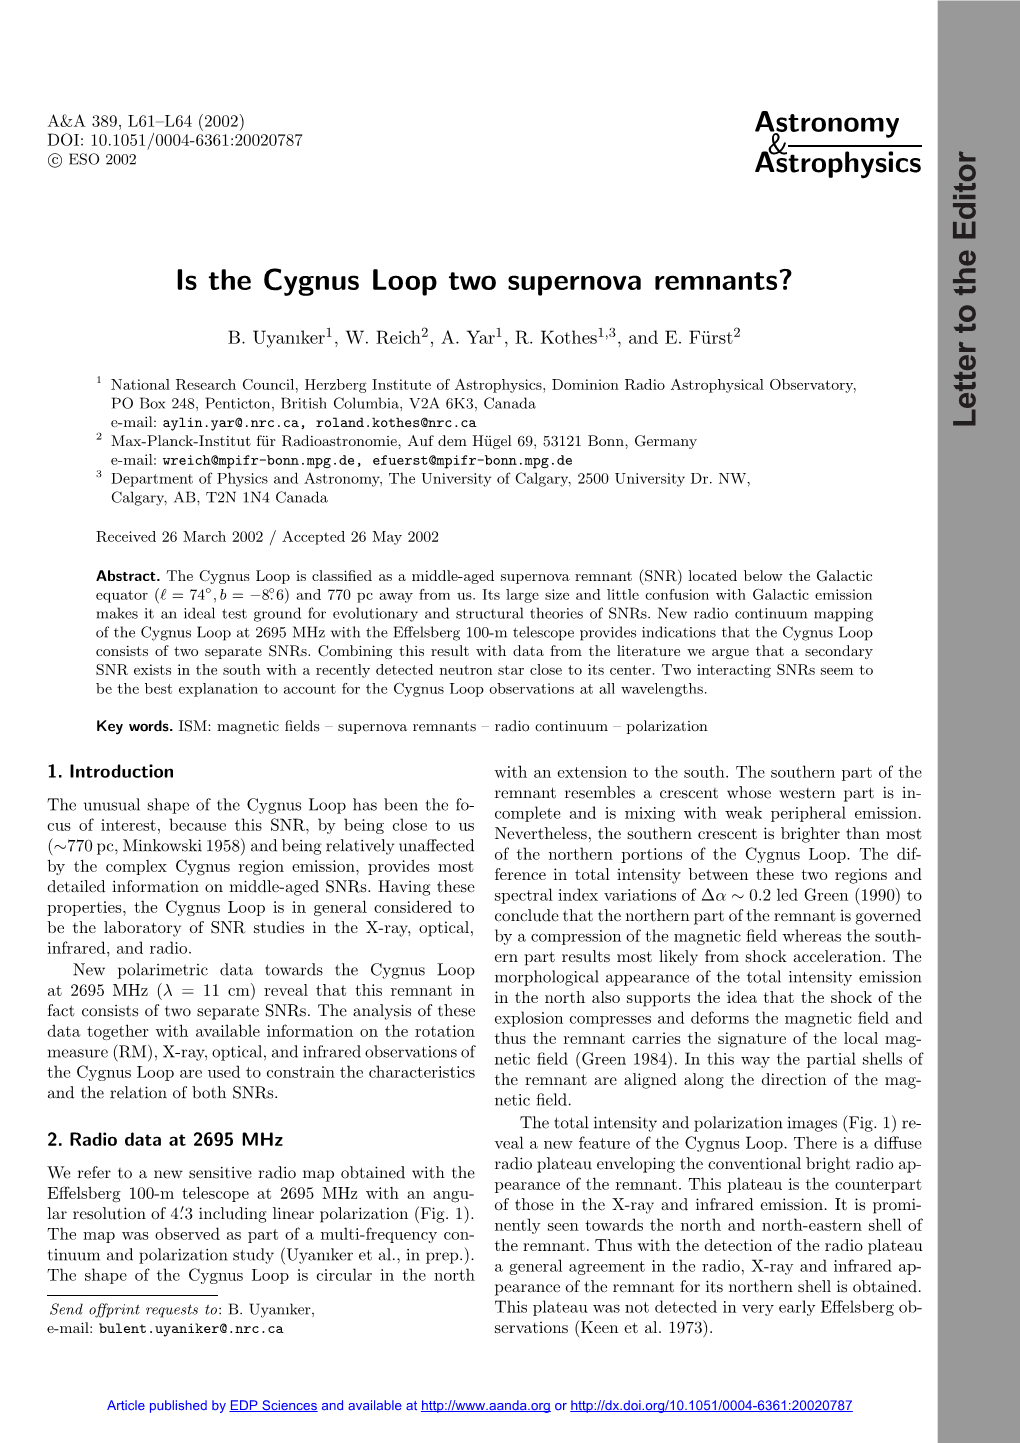 Is the Cygnus Loop Two Supernova Remnants?